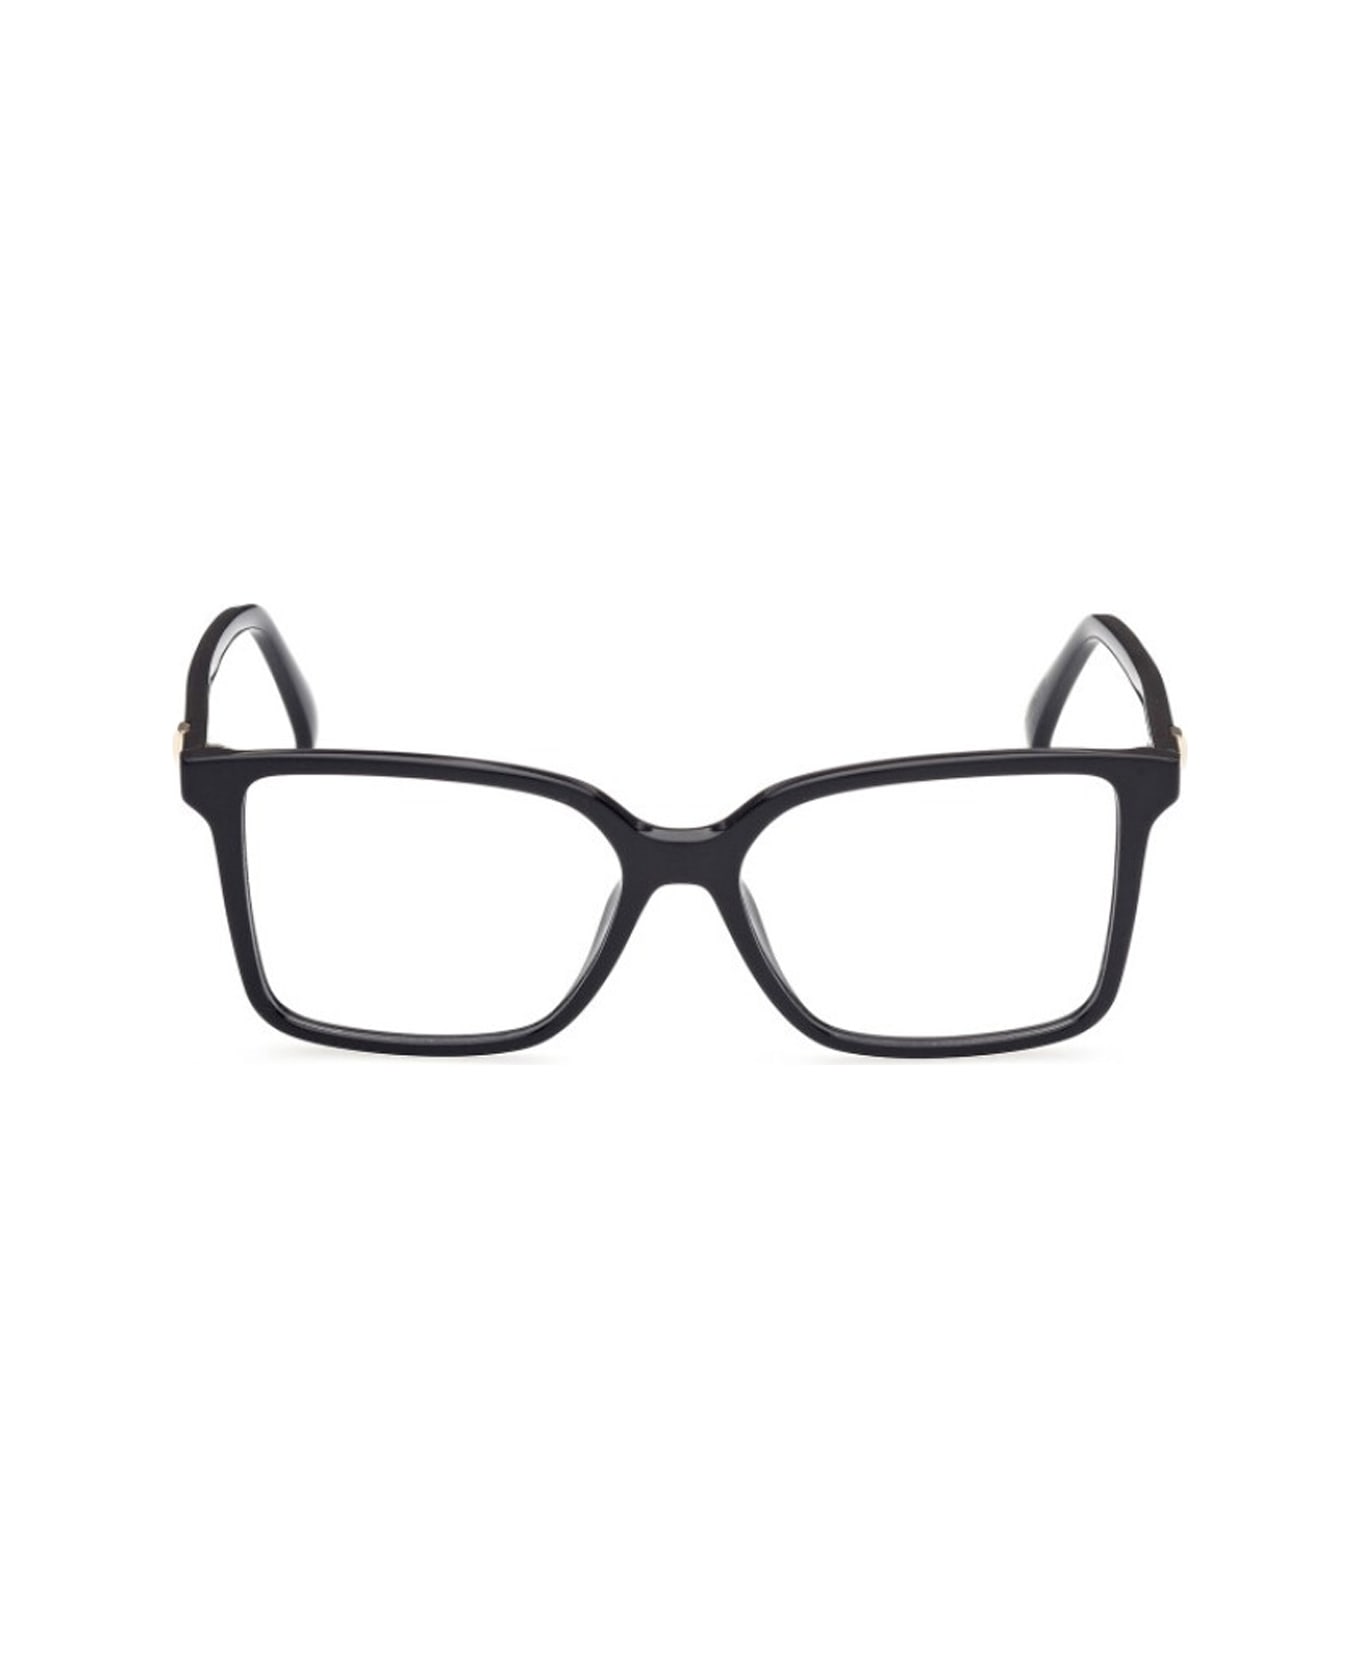 Max Mara Mm5022 Glasses - Nero